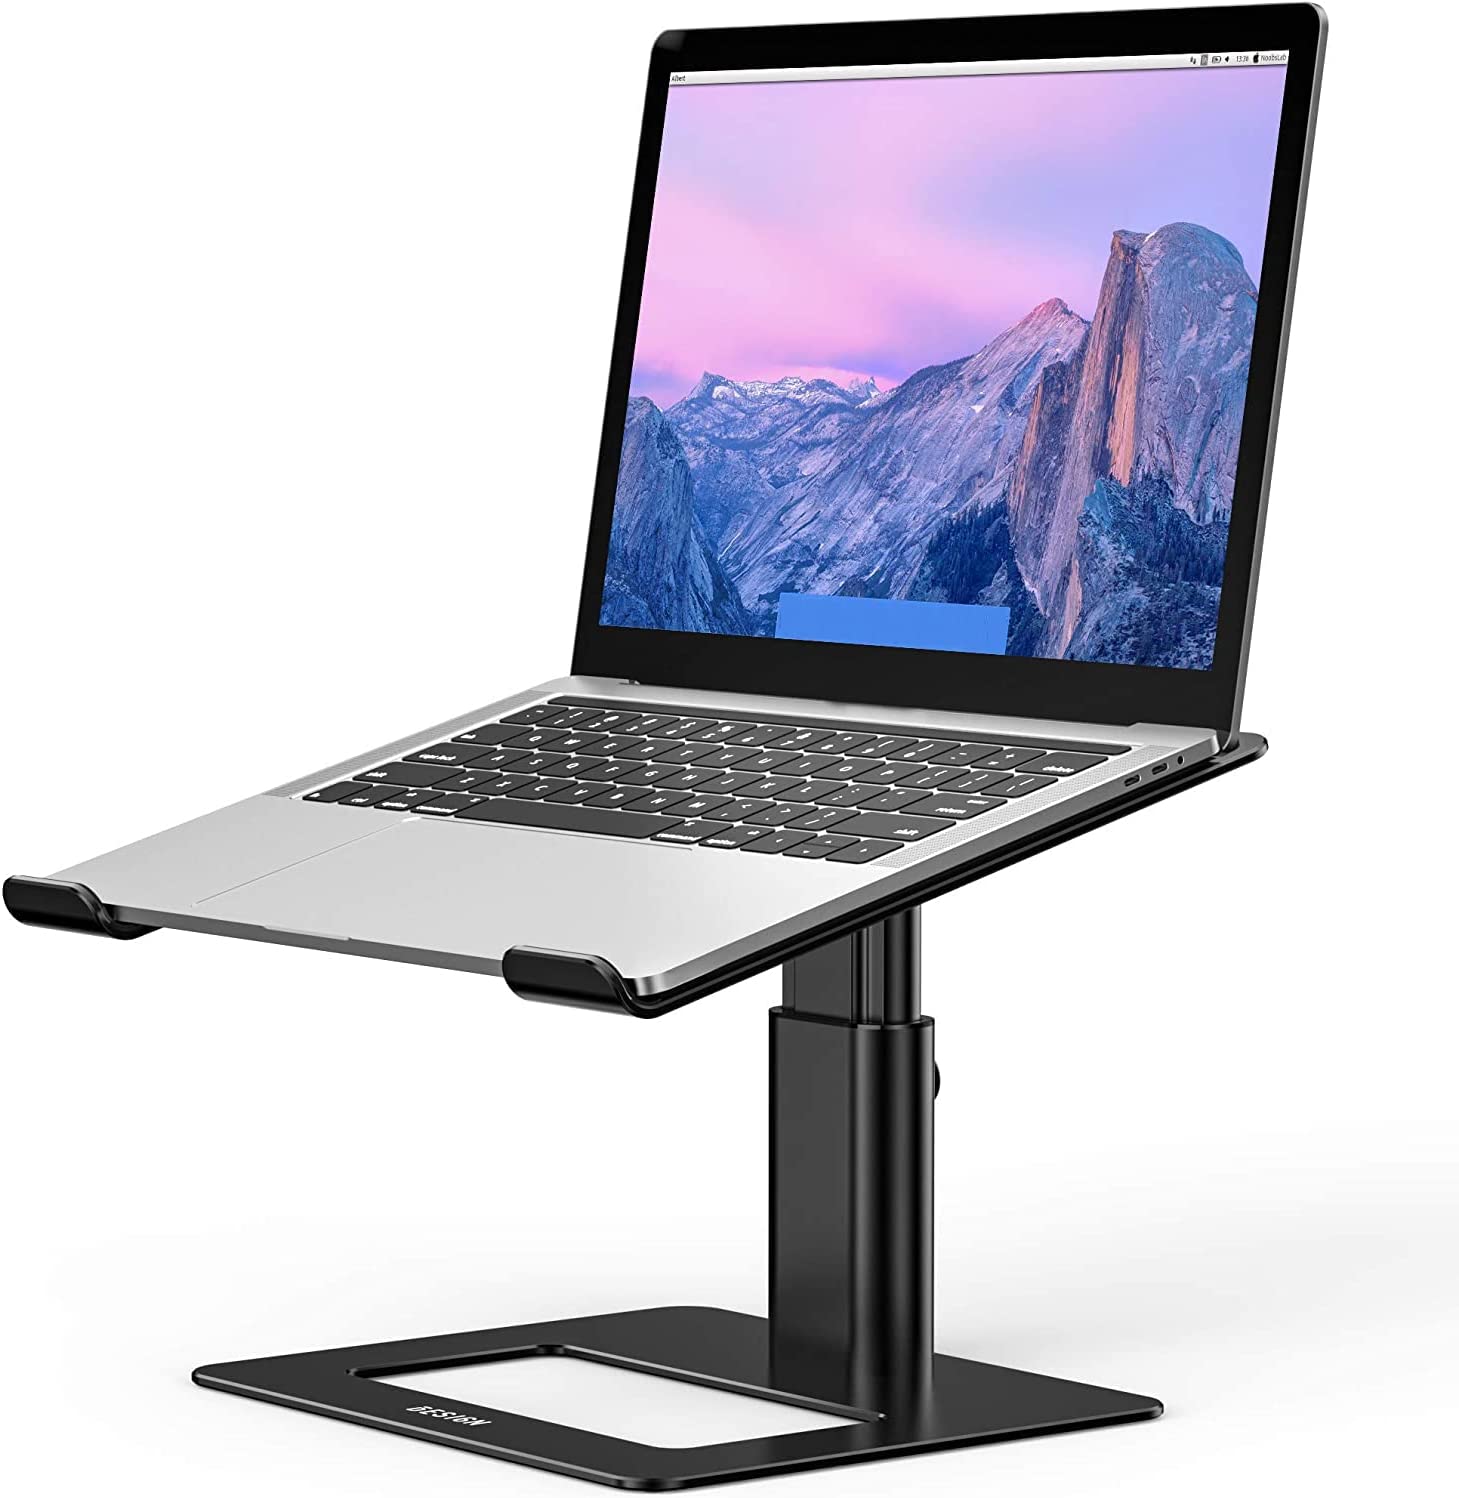 Besign LSX3 Aluminum Laptop Stand